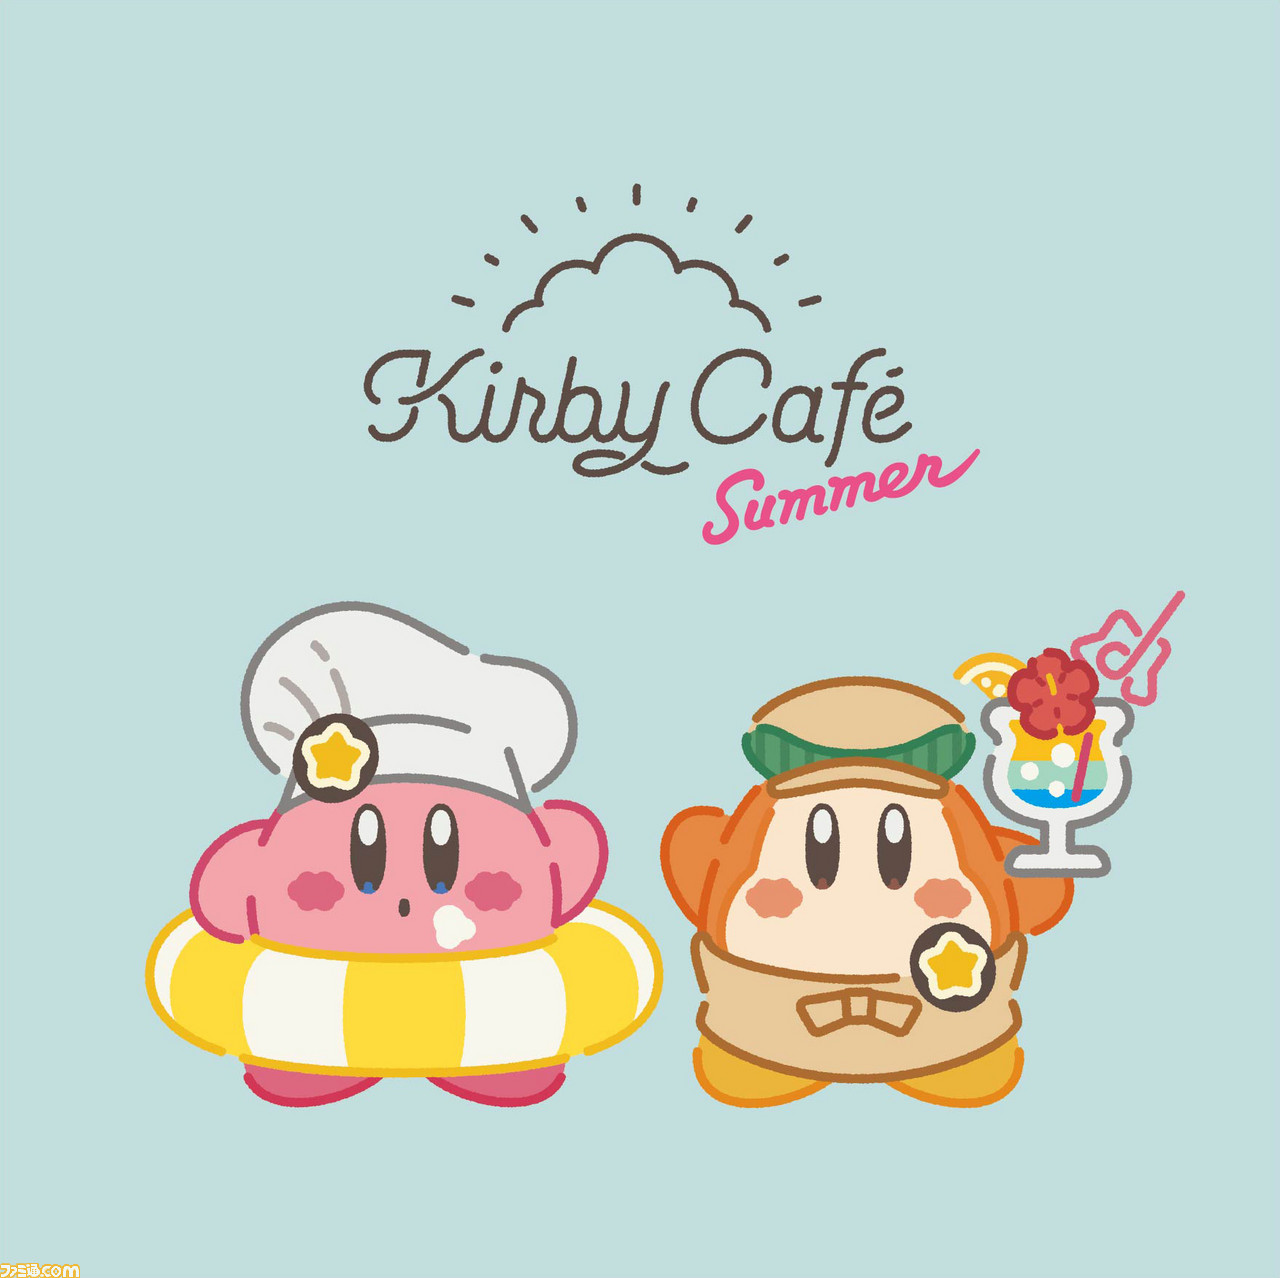 Kirby Cafe カービィカフェ の開催期間がまたまた延長 6月11日からは夏らしいフードやスイーツ 新商品が登場 ファミ通 Com